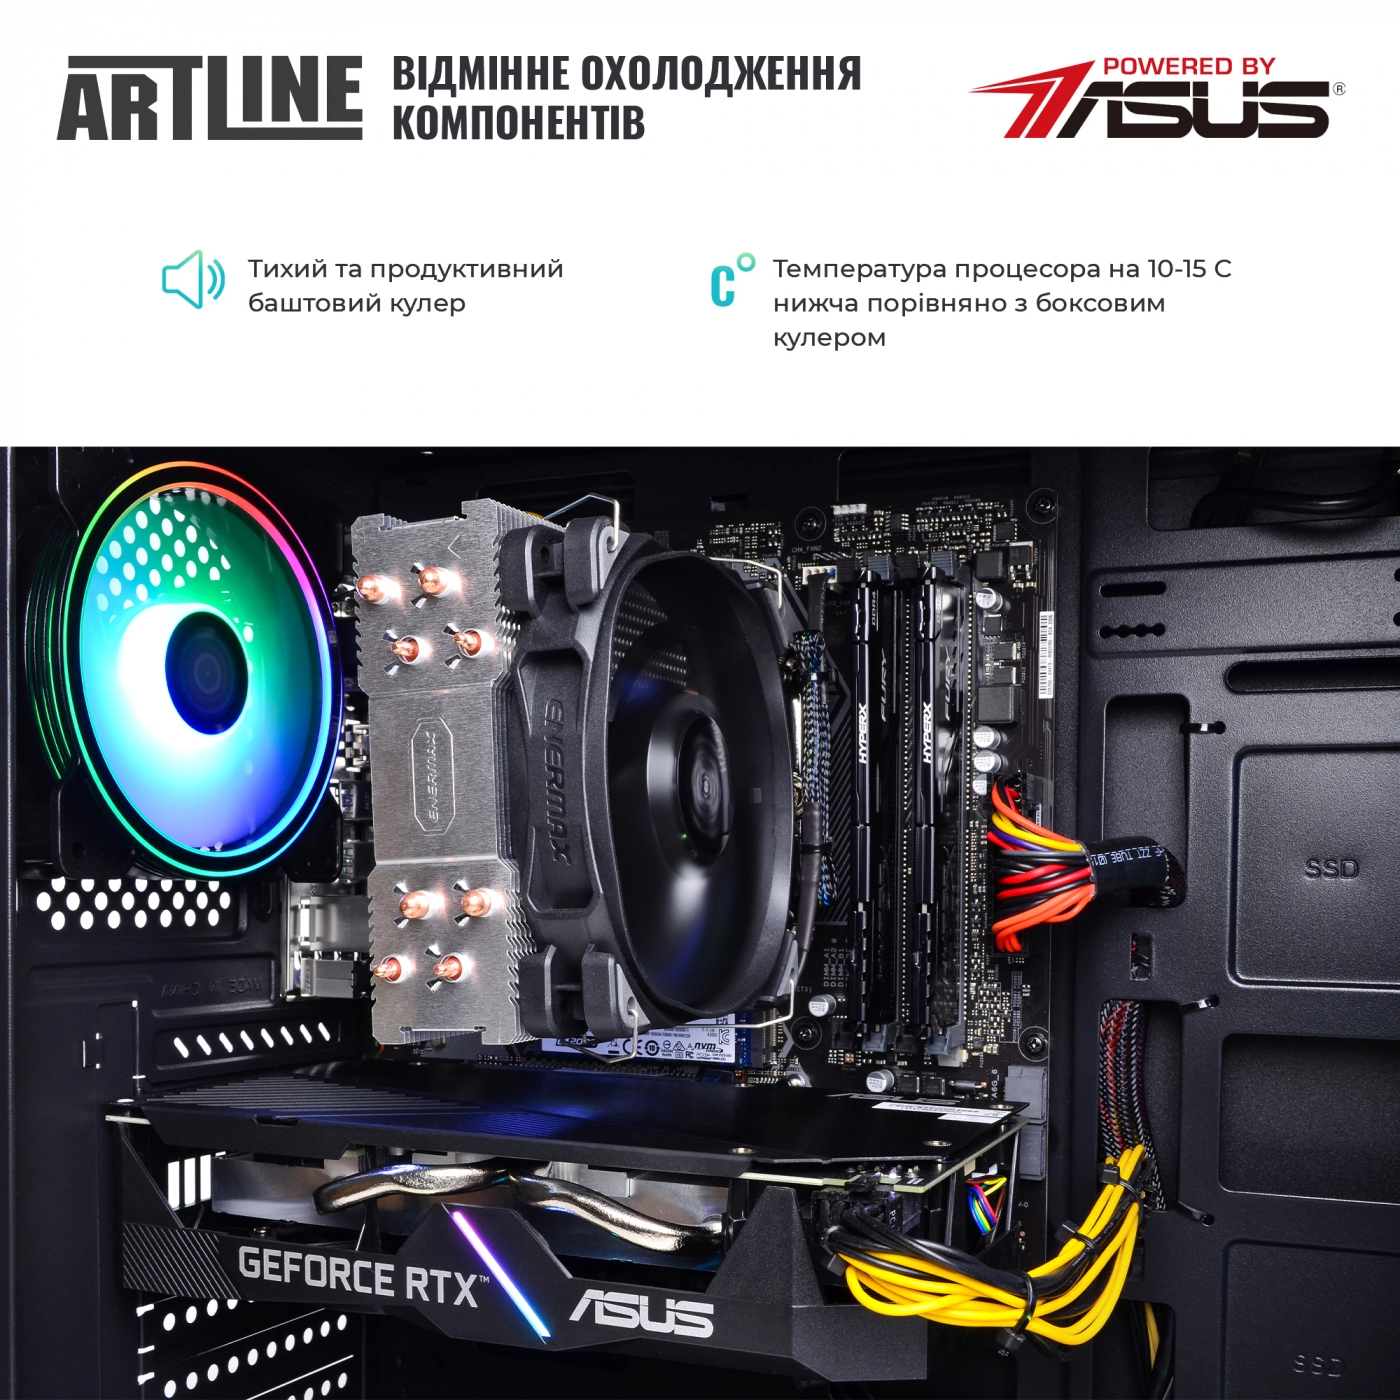 Купить Компьютер ARTLINE Gaming X58v05 - фото 7